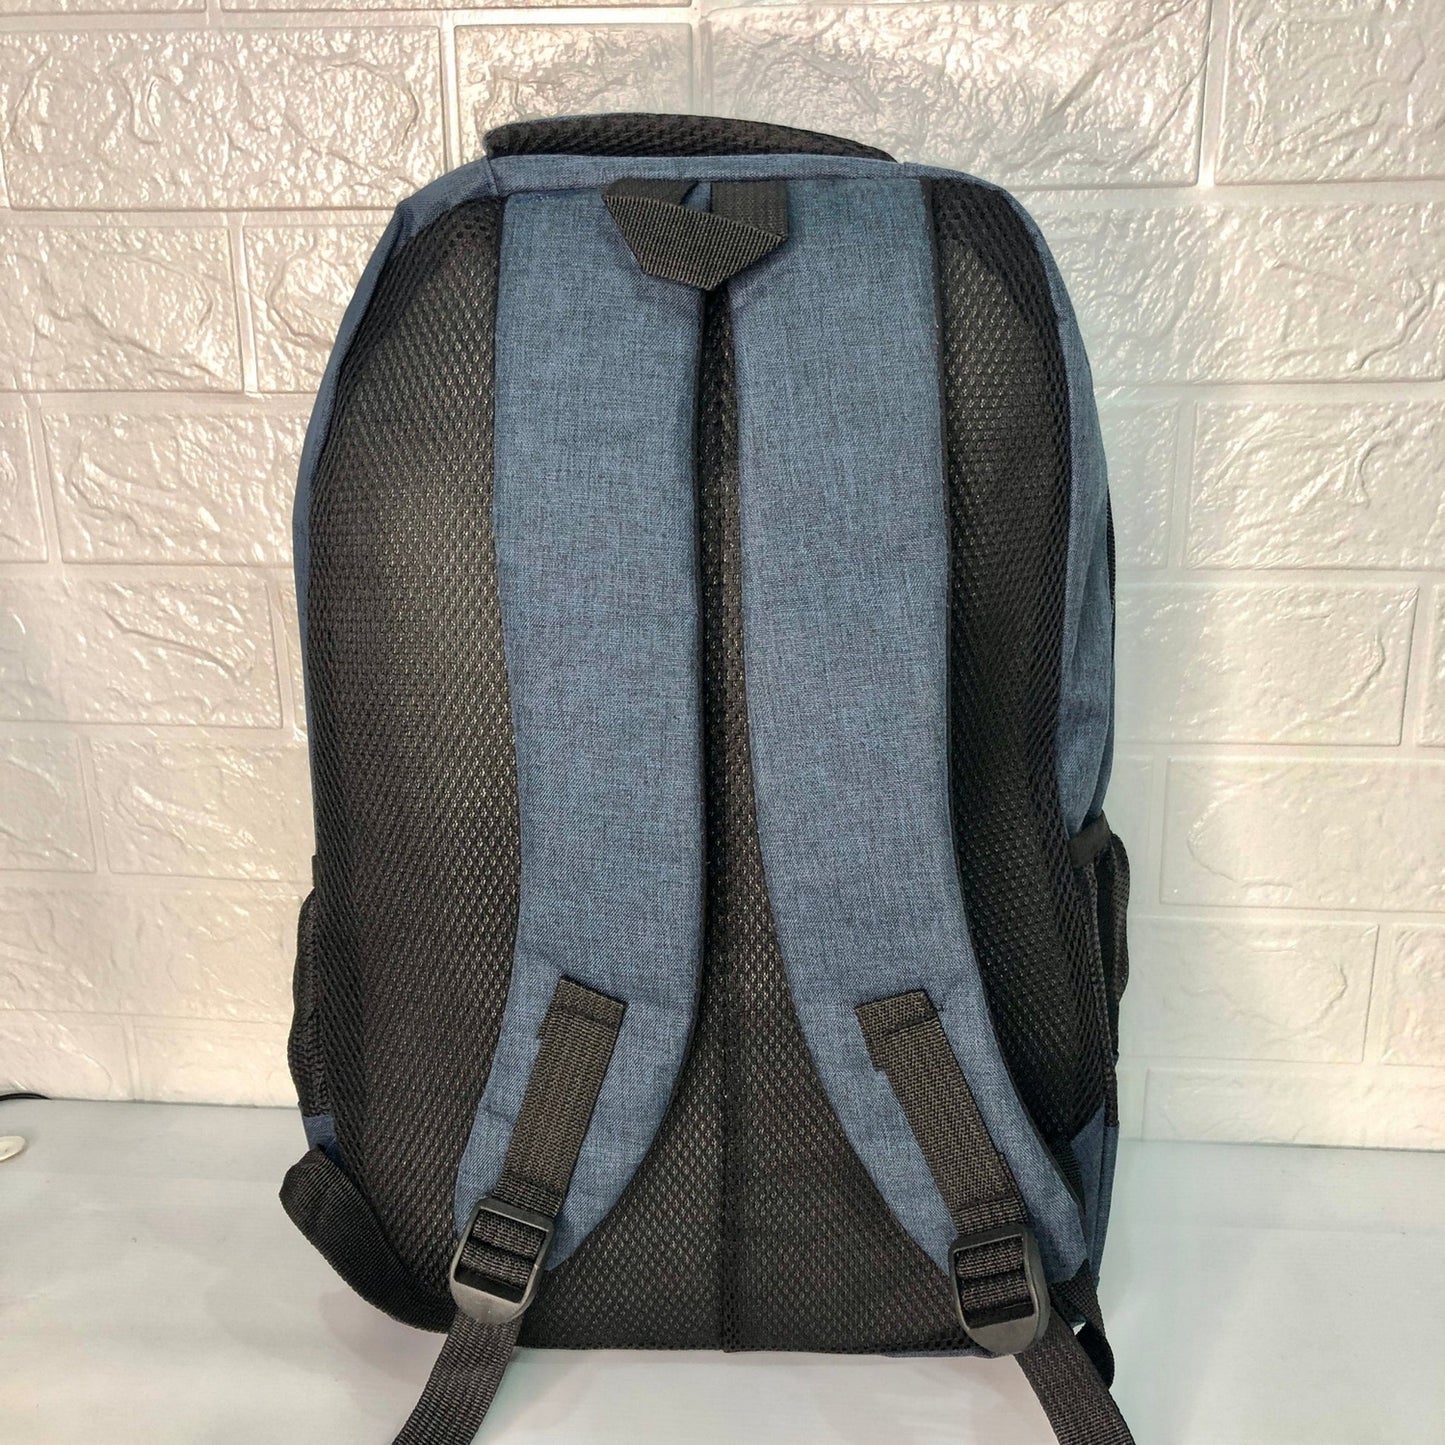 Shoulder Backpack Laptop Bag School Bag - FlyingCart.pk